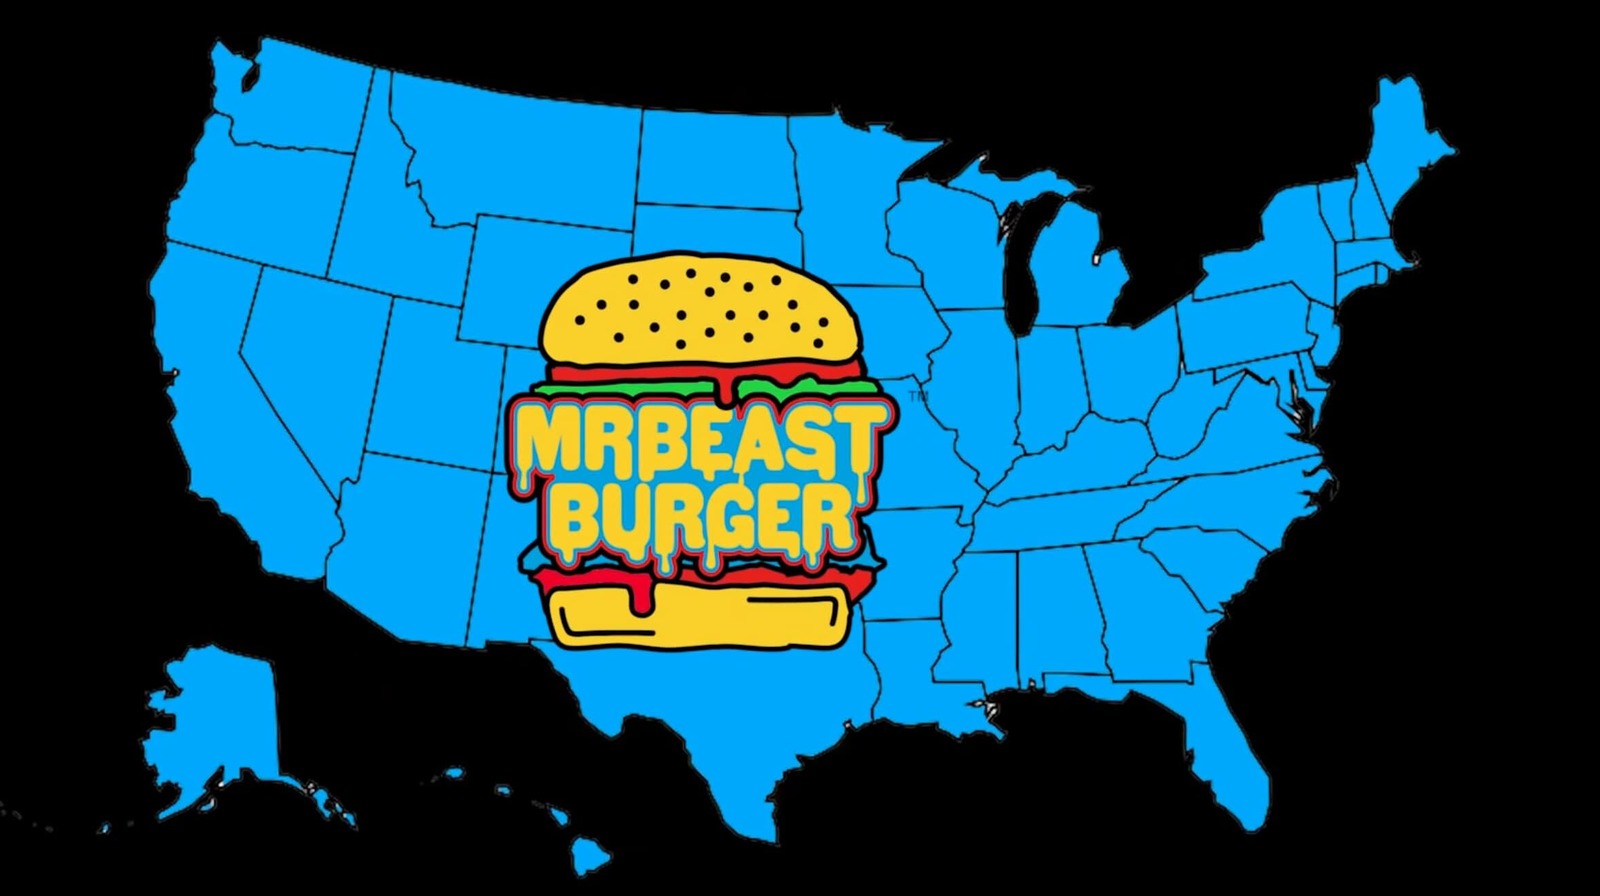 Burger mrbeast How Much